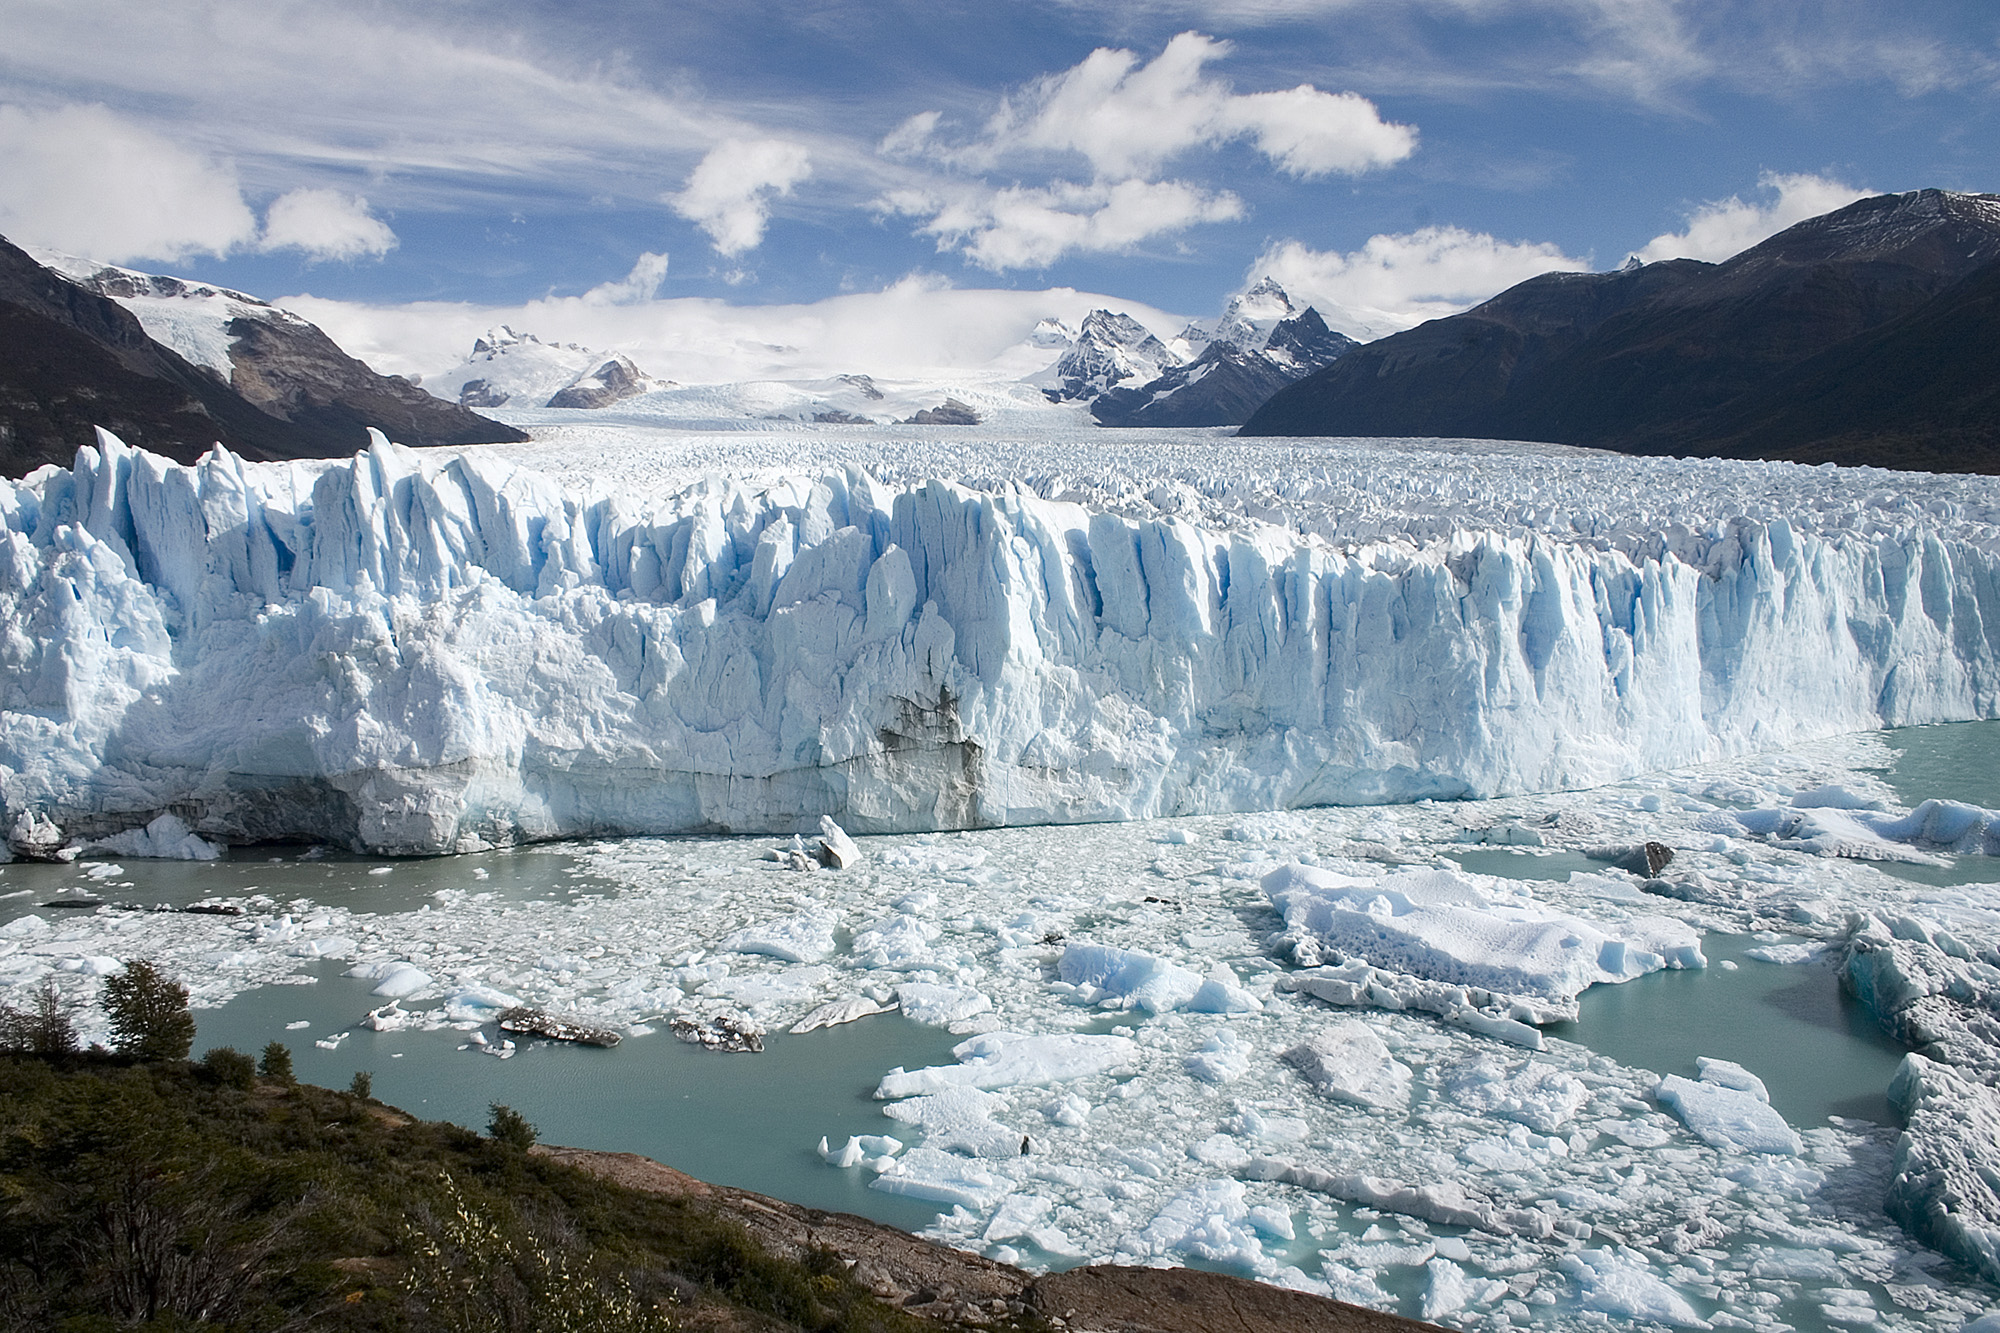 Perito_Moreno_Glacier_Patagonia_Argentina_Luca_Galuzzi_2005.JPG